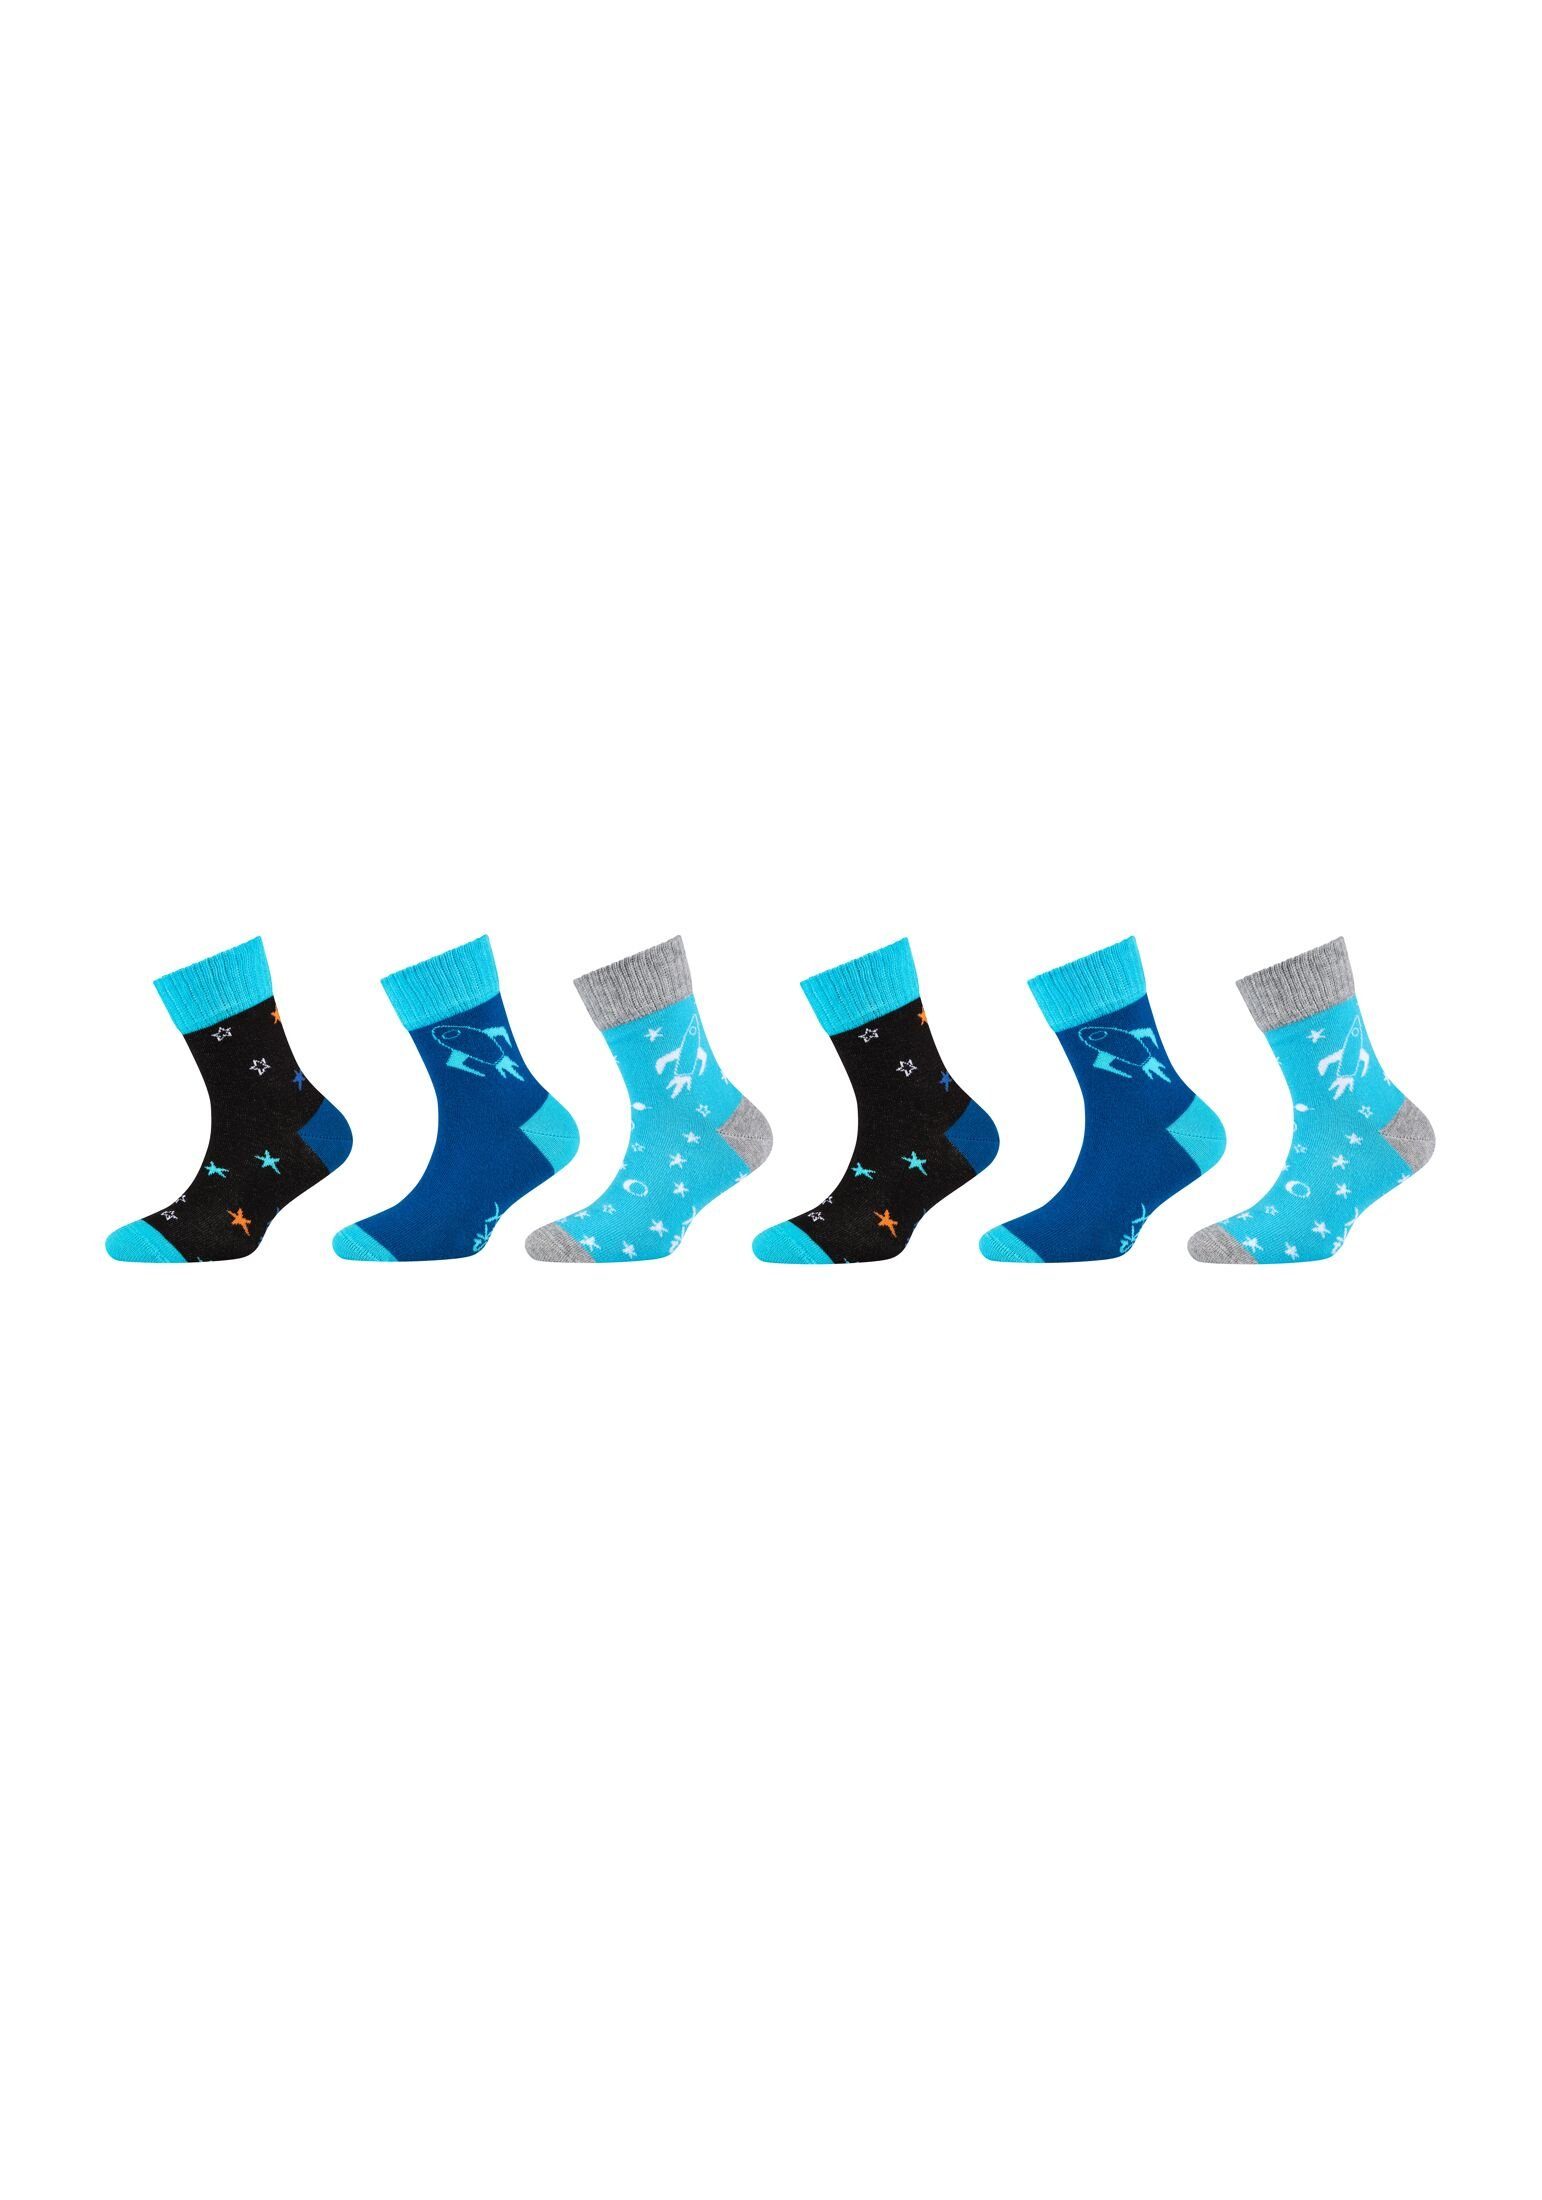 Skechers Socken Socken 6er Pack blue mix